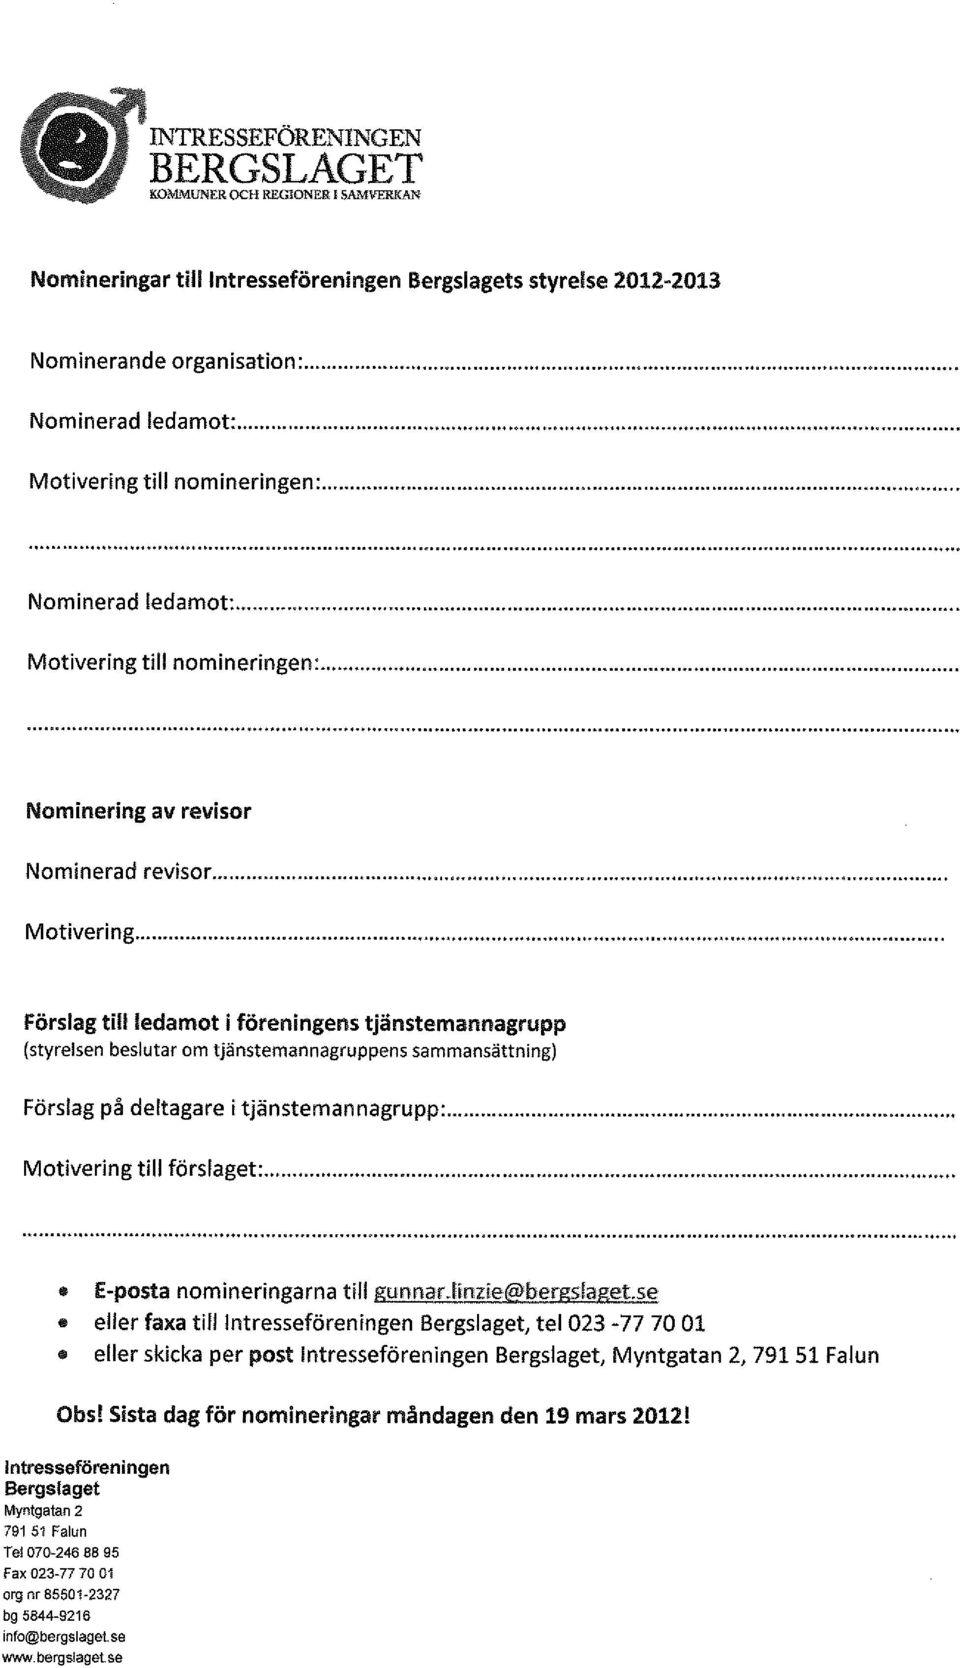 ... Motivering till förslaget:...... E-posta nomineringarna till gunnar.finzie@bergslaget.se.. eller faxa till Intresseföreningen Bergslaget, tel 023-77 70 01.